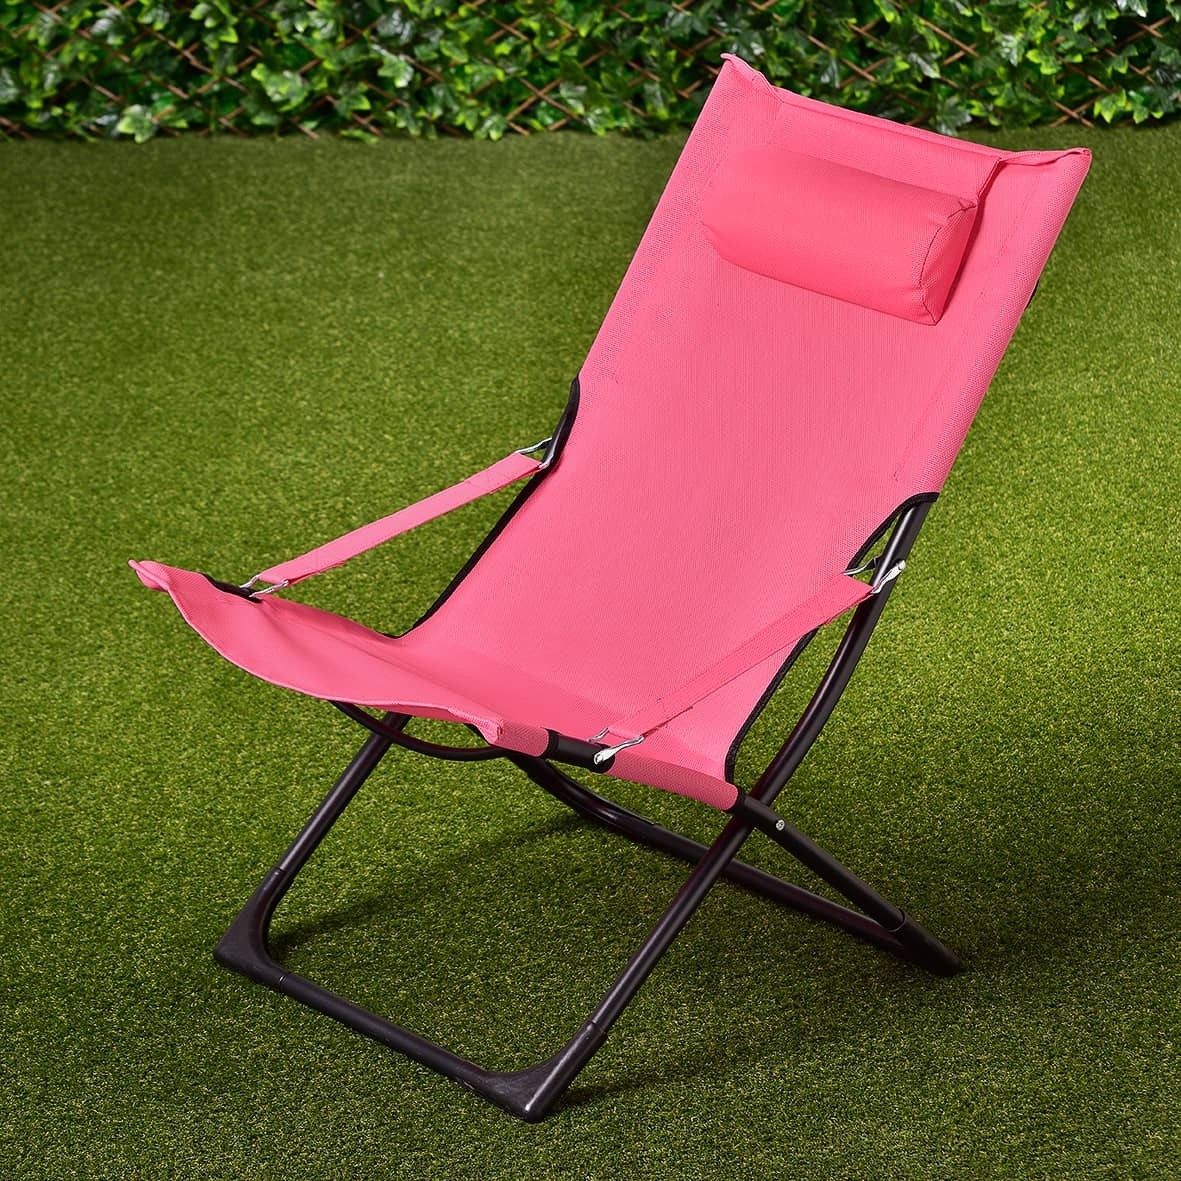 Tropic garden relaxer deck chair pink garden furniture